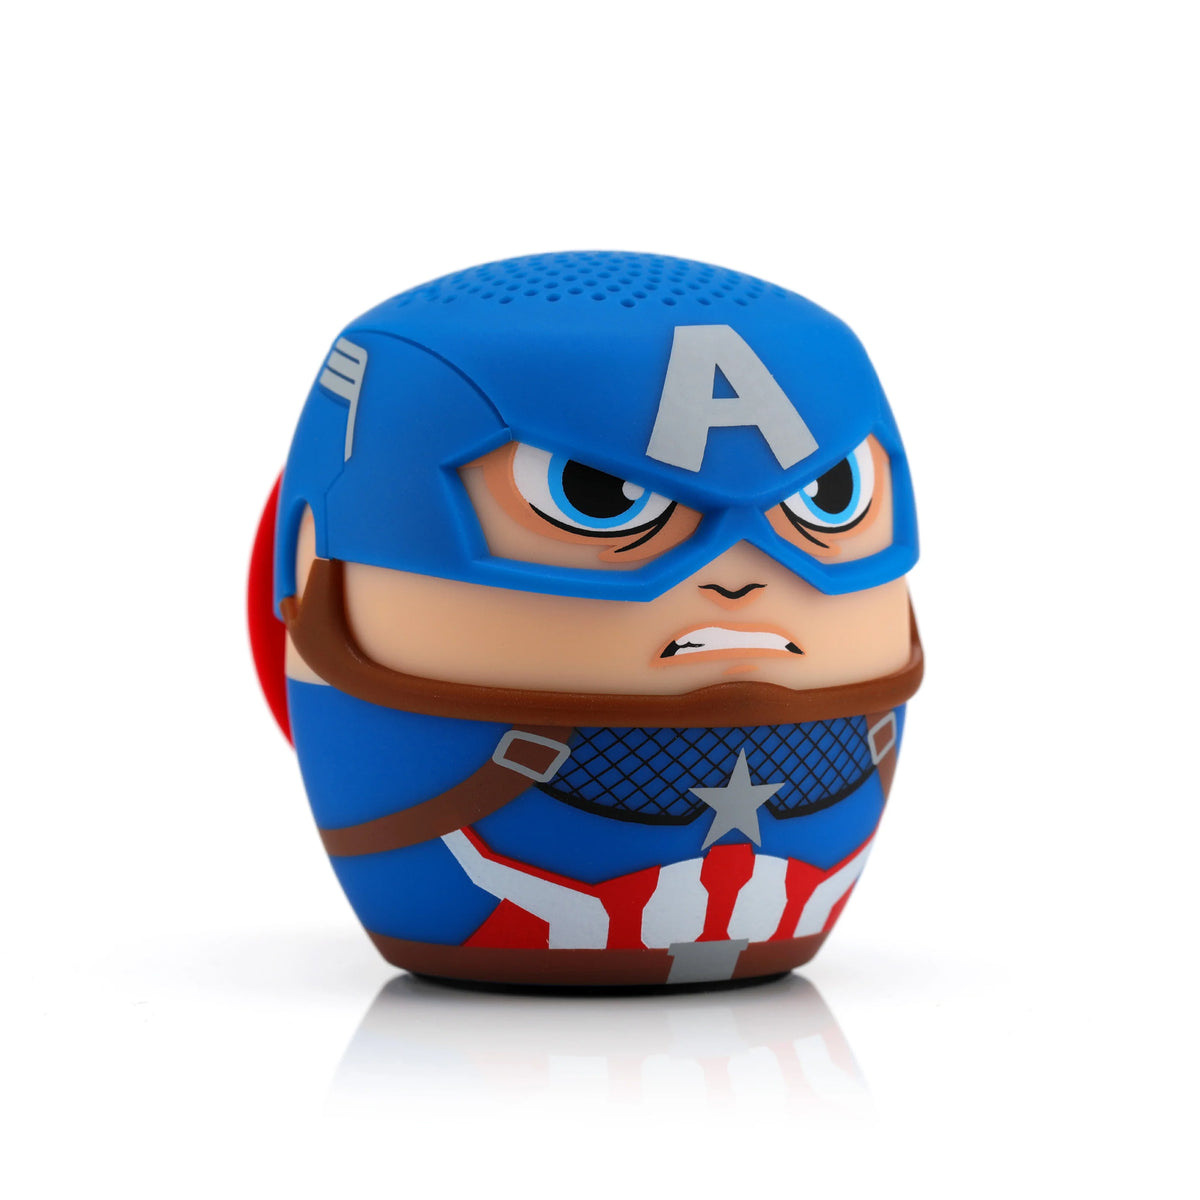 Marvel Avengers Captain America Wireless Bluetooth Speaker